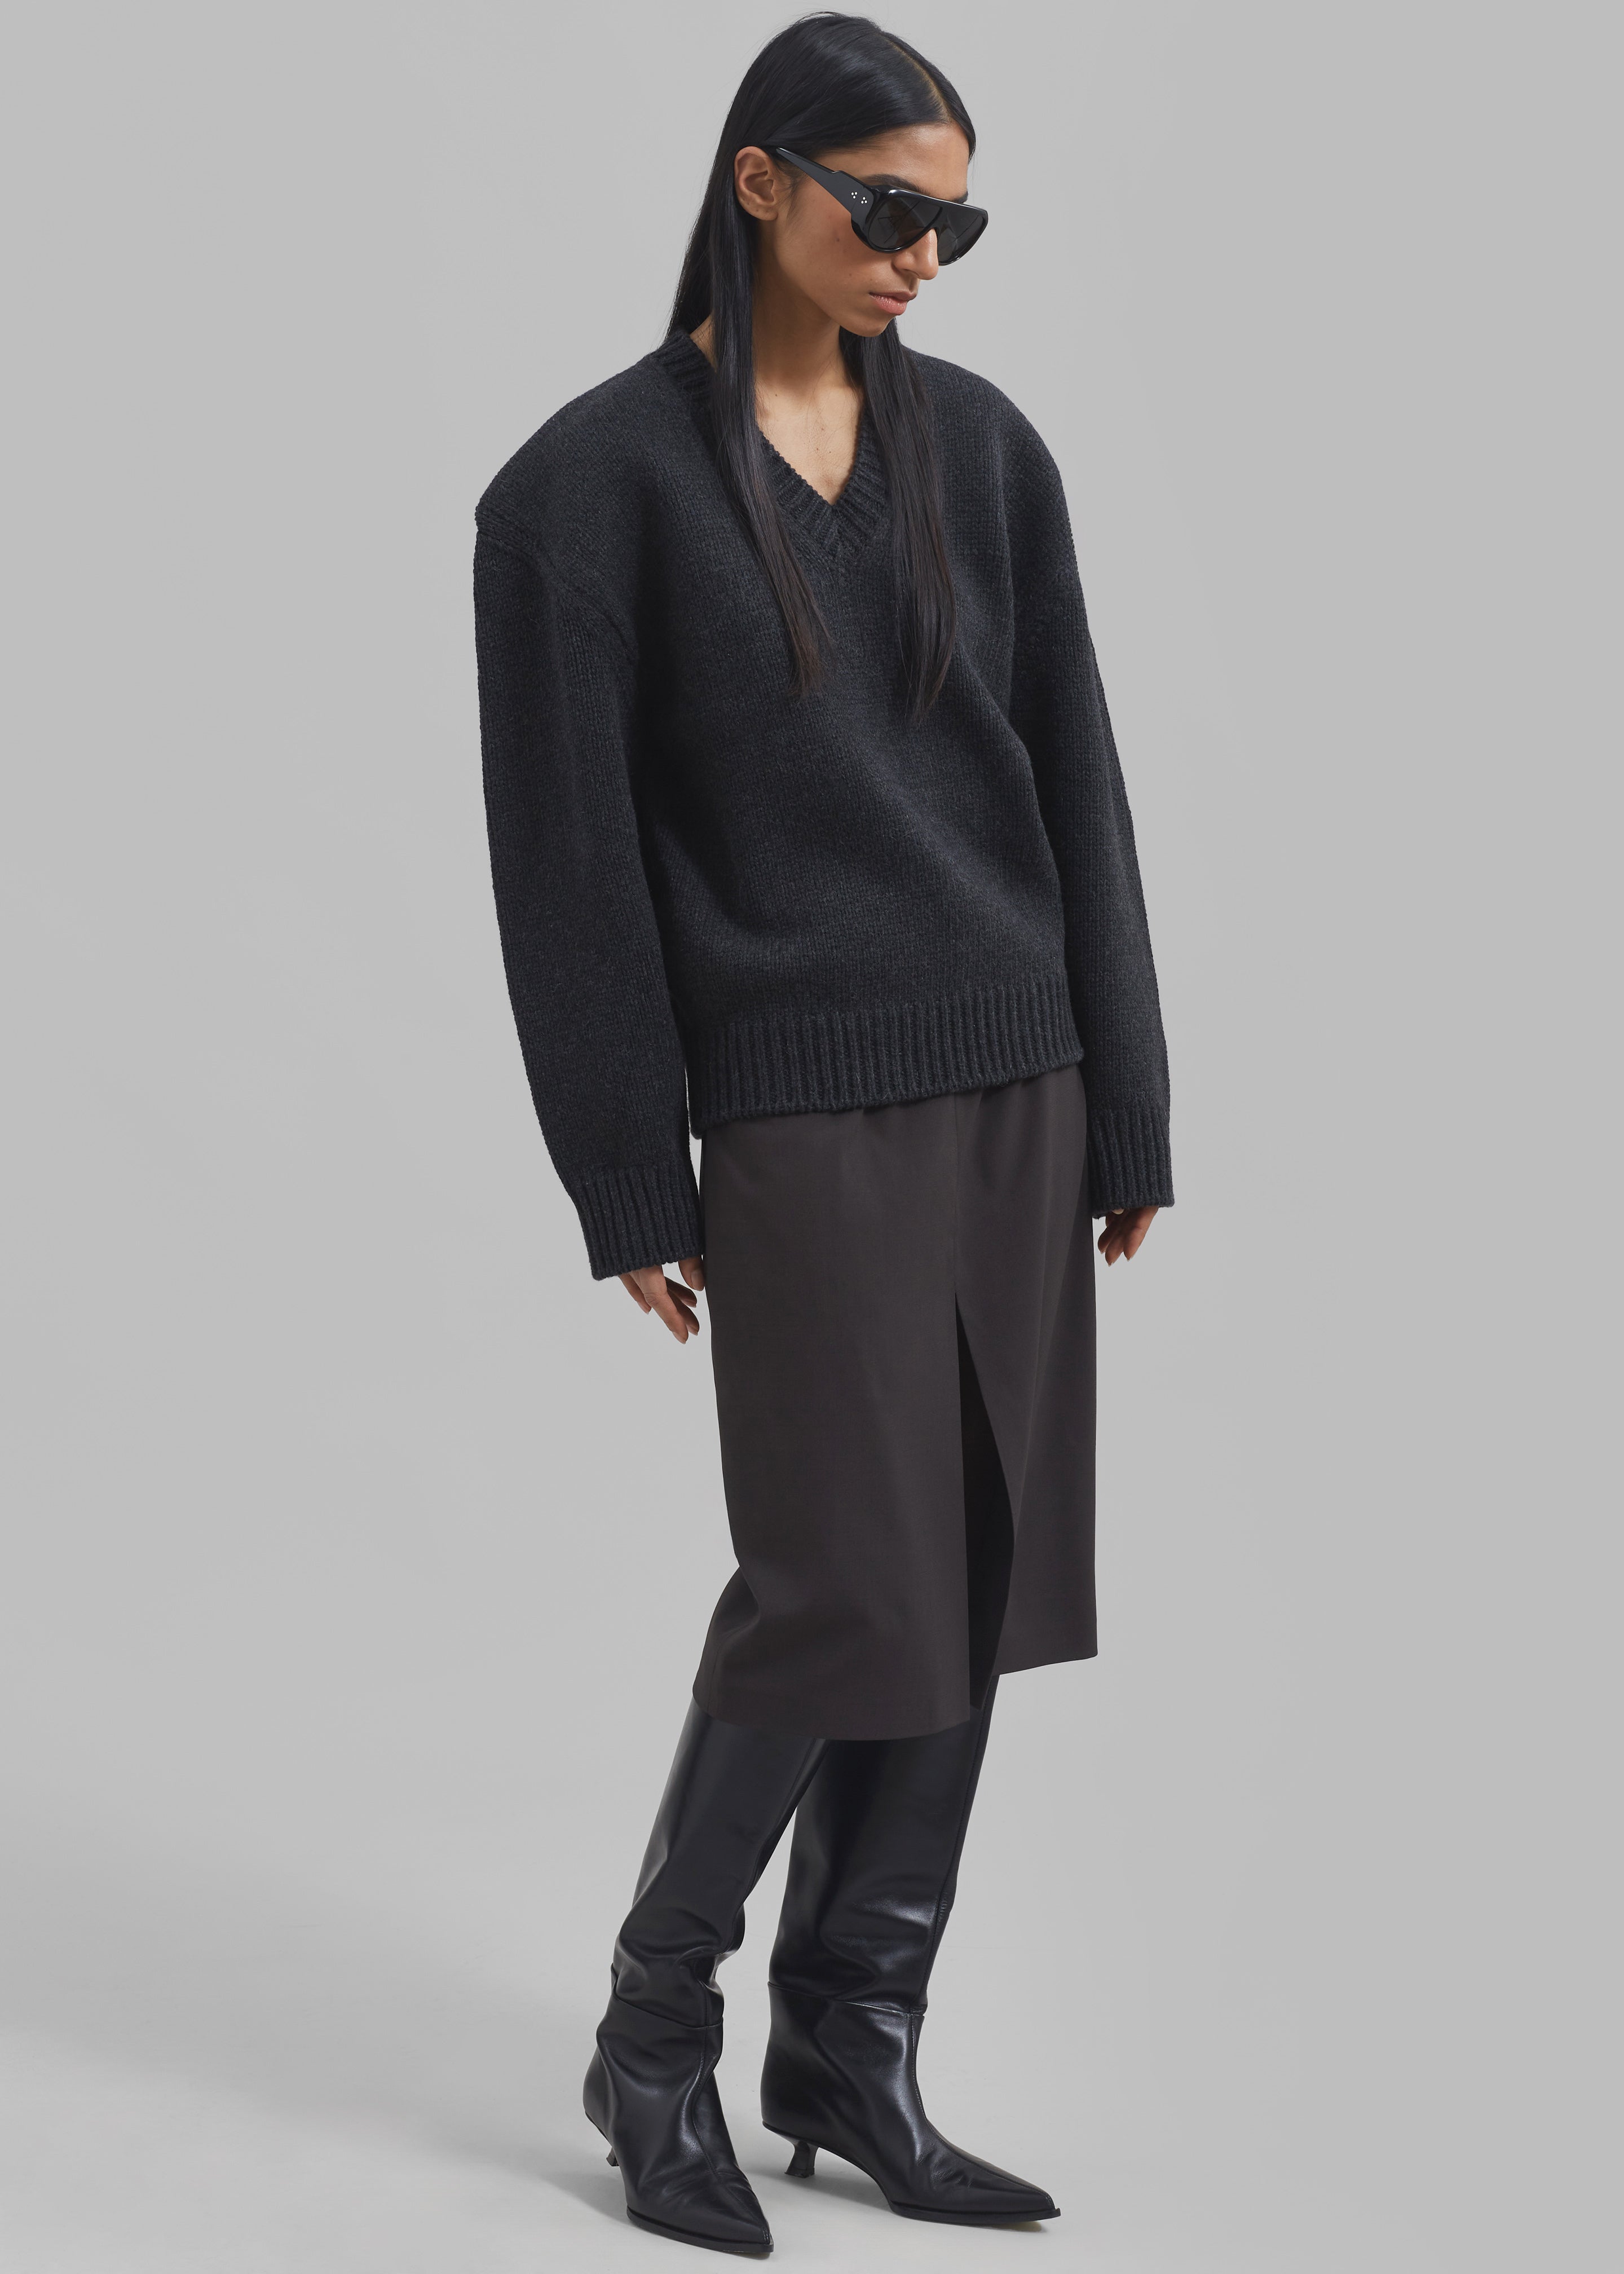 Edina Two Tone Wool Sweater - Charcoal - 8